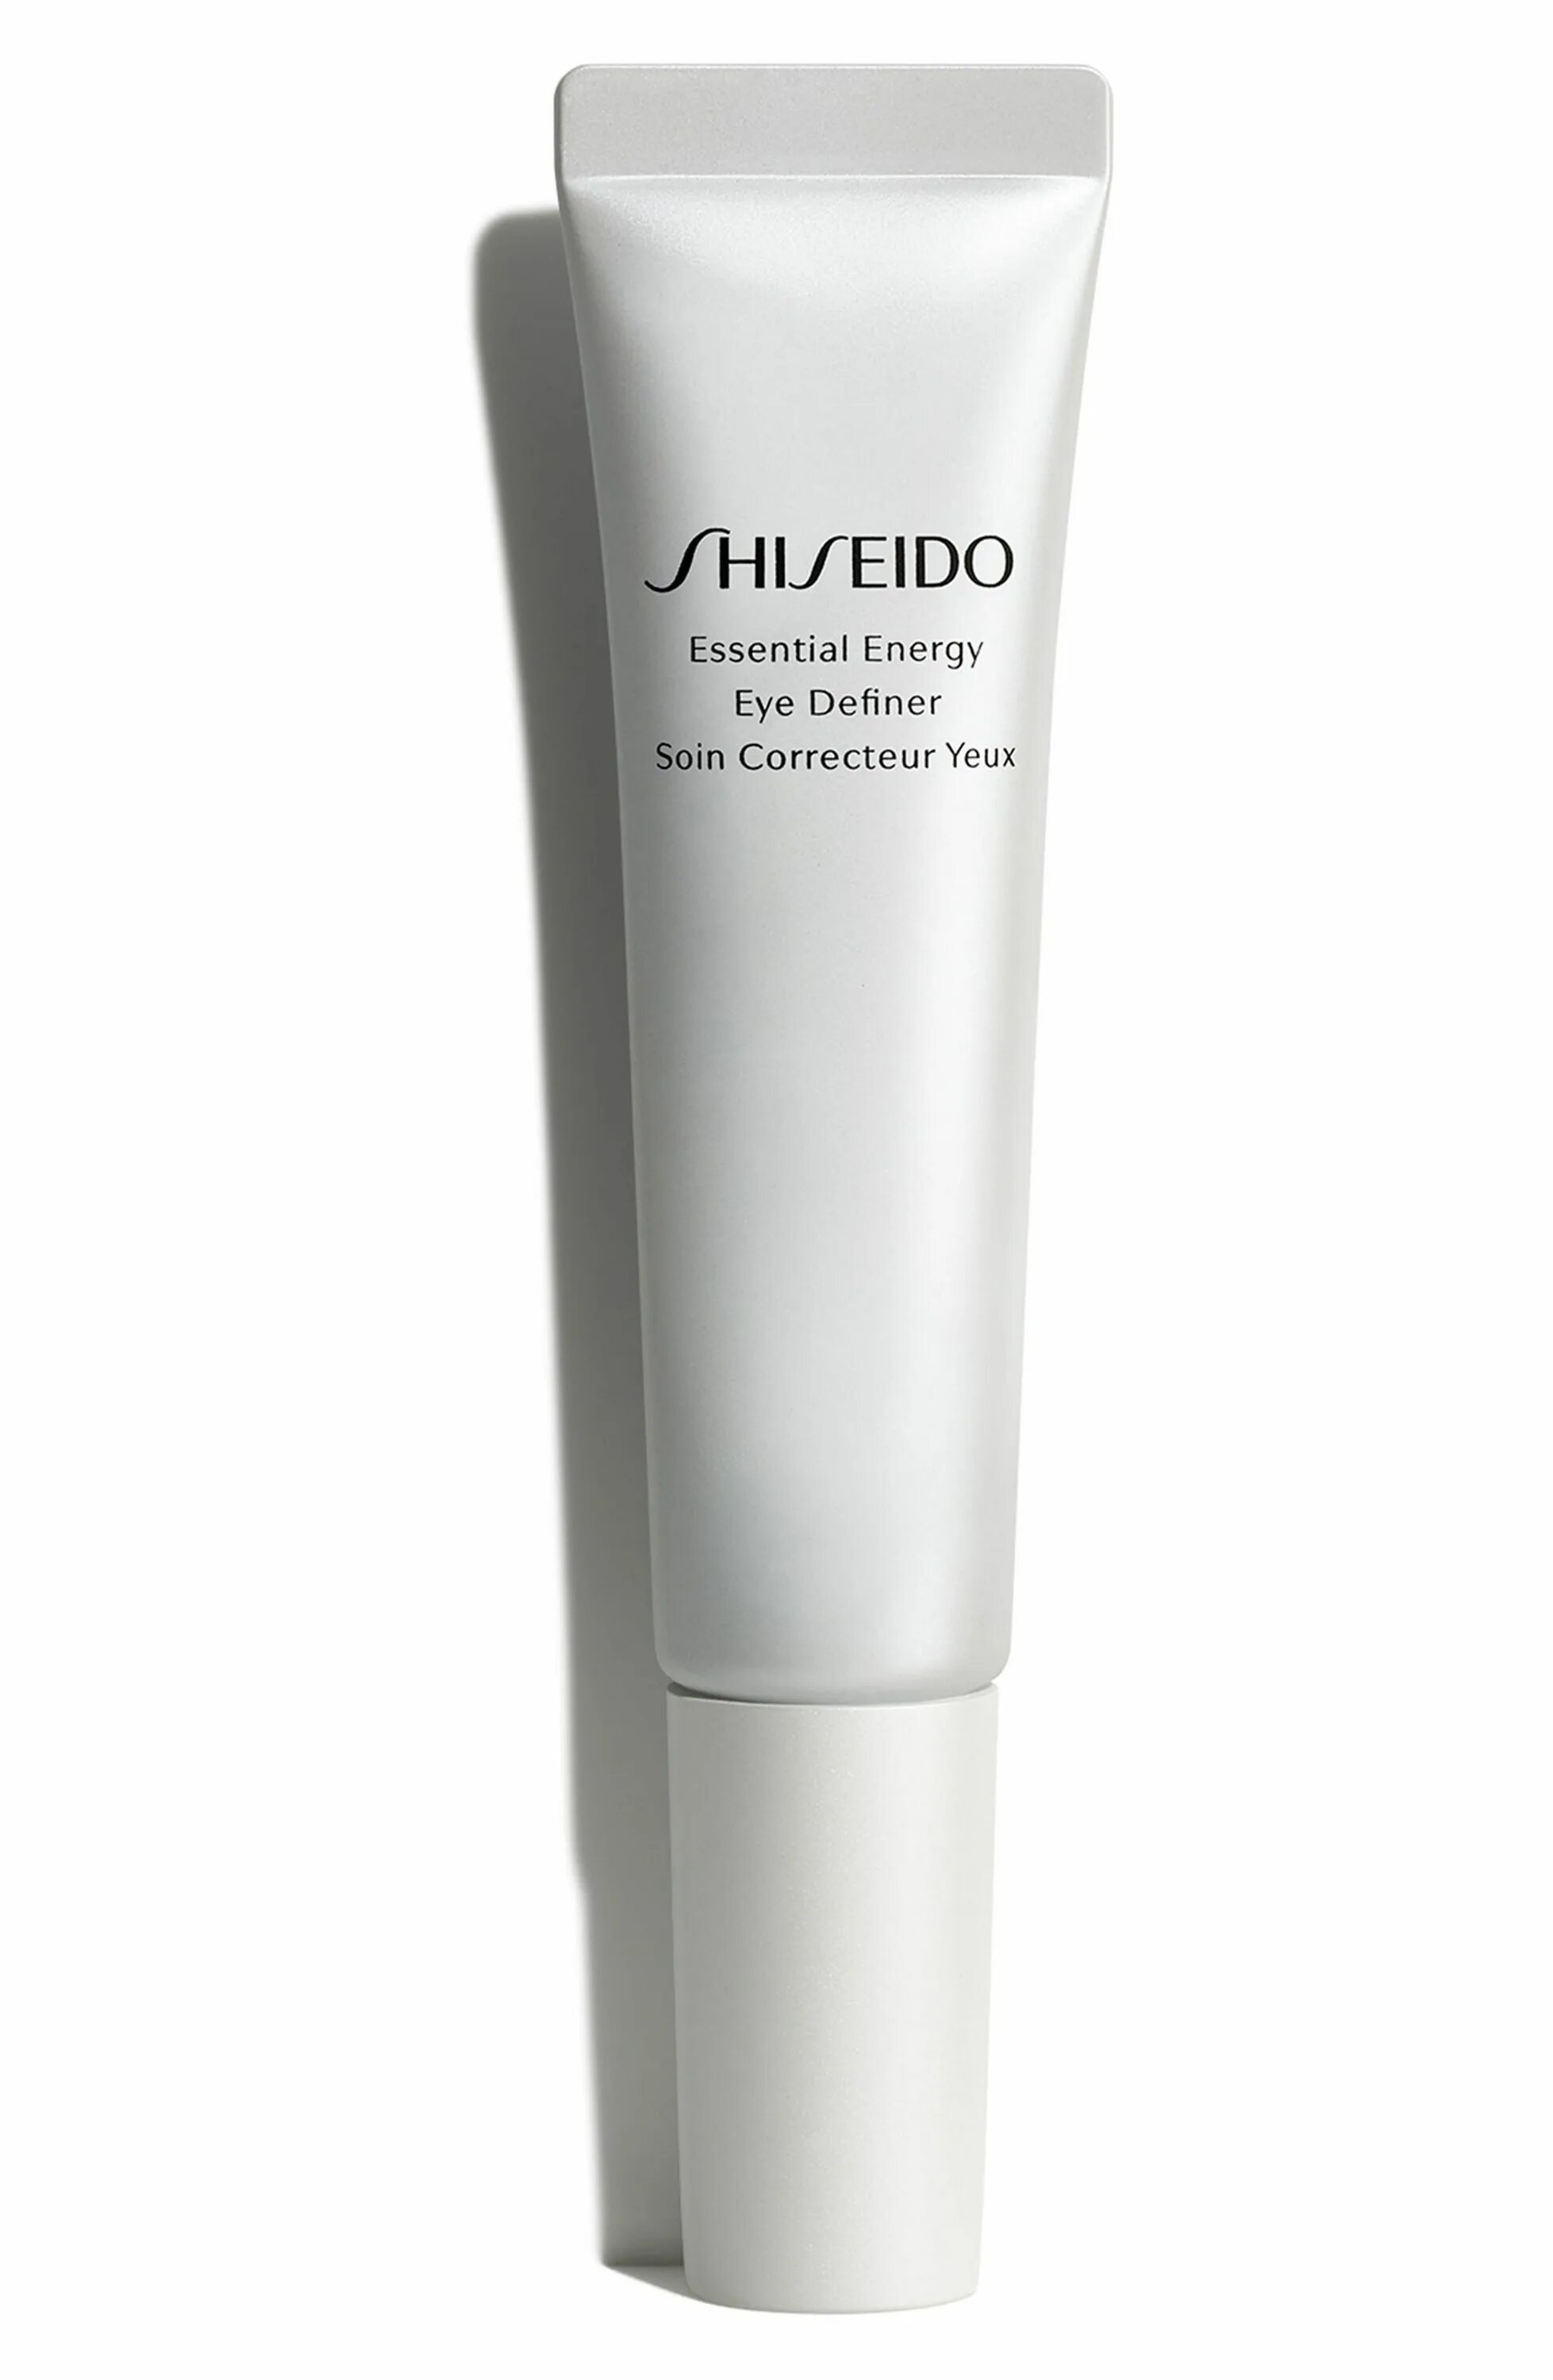 Крем Shiseido Essential Energy. Шисейдо Essential Energy Eye Definer. Shiseido preparation Essential Energy Eye Definer. Energetic Eye Lift многофункциональный мужской крем для контура глаз 15 мл Nirvel. Shiseido essential energy